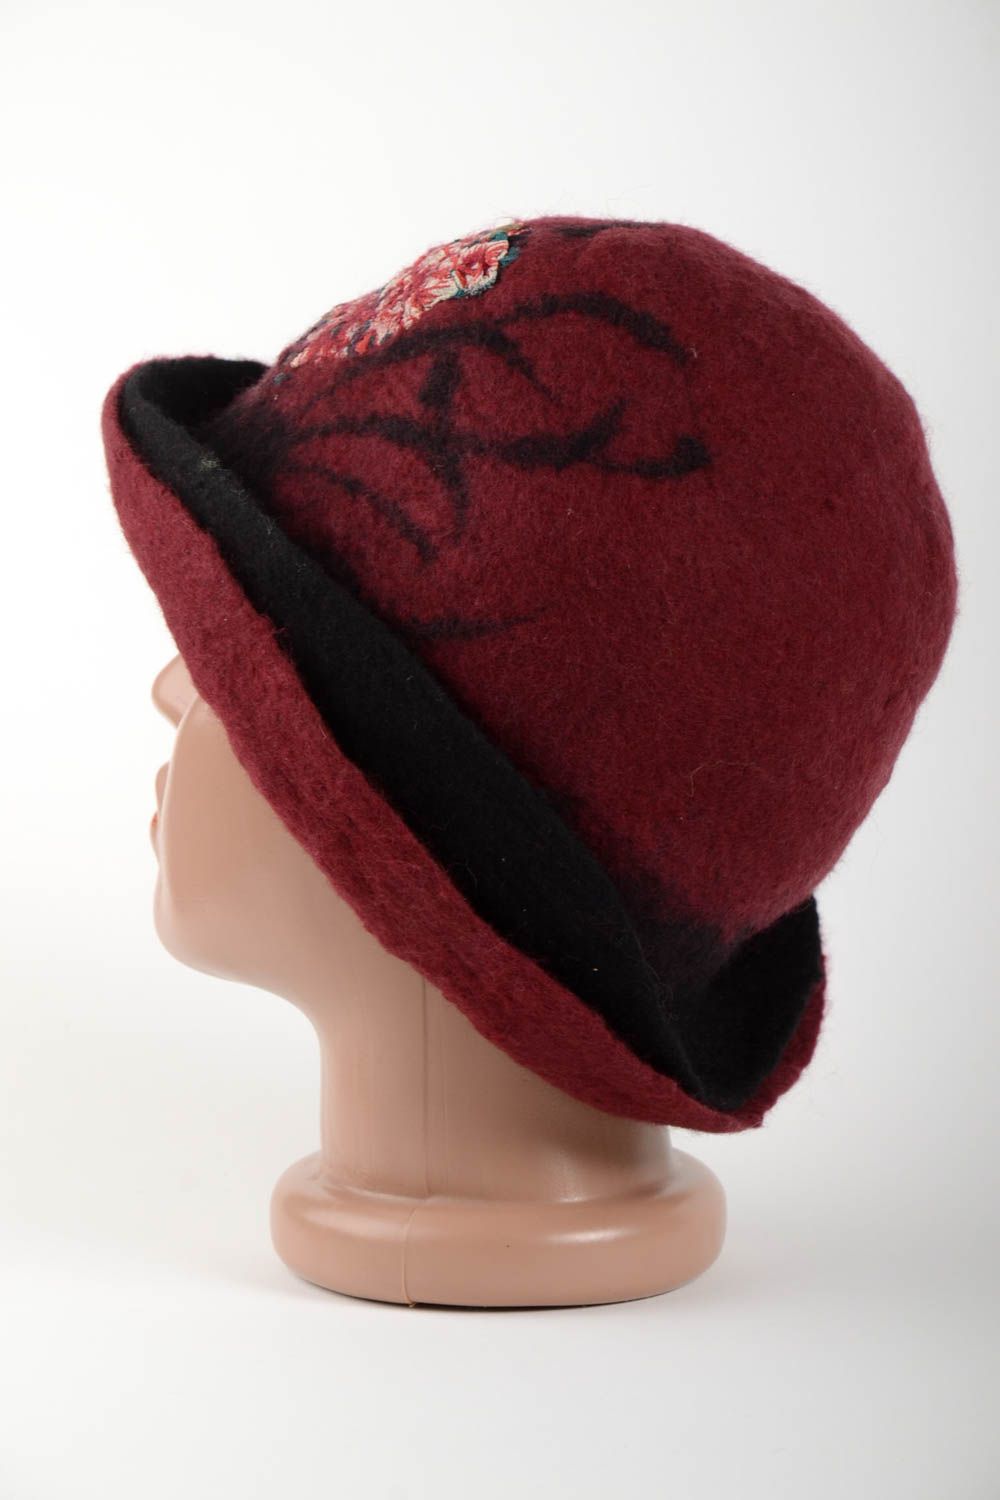 Шапка ручной работы бордовая зимняя шапка оригинальная женская шапка из шерсти фото 1